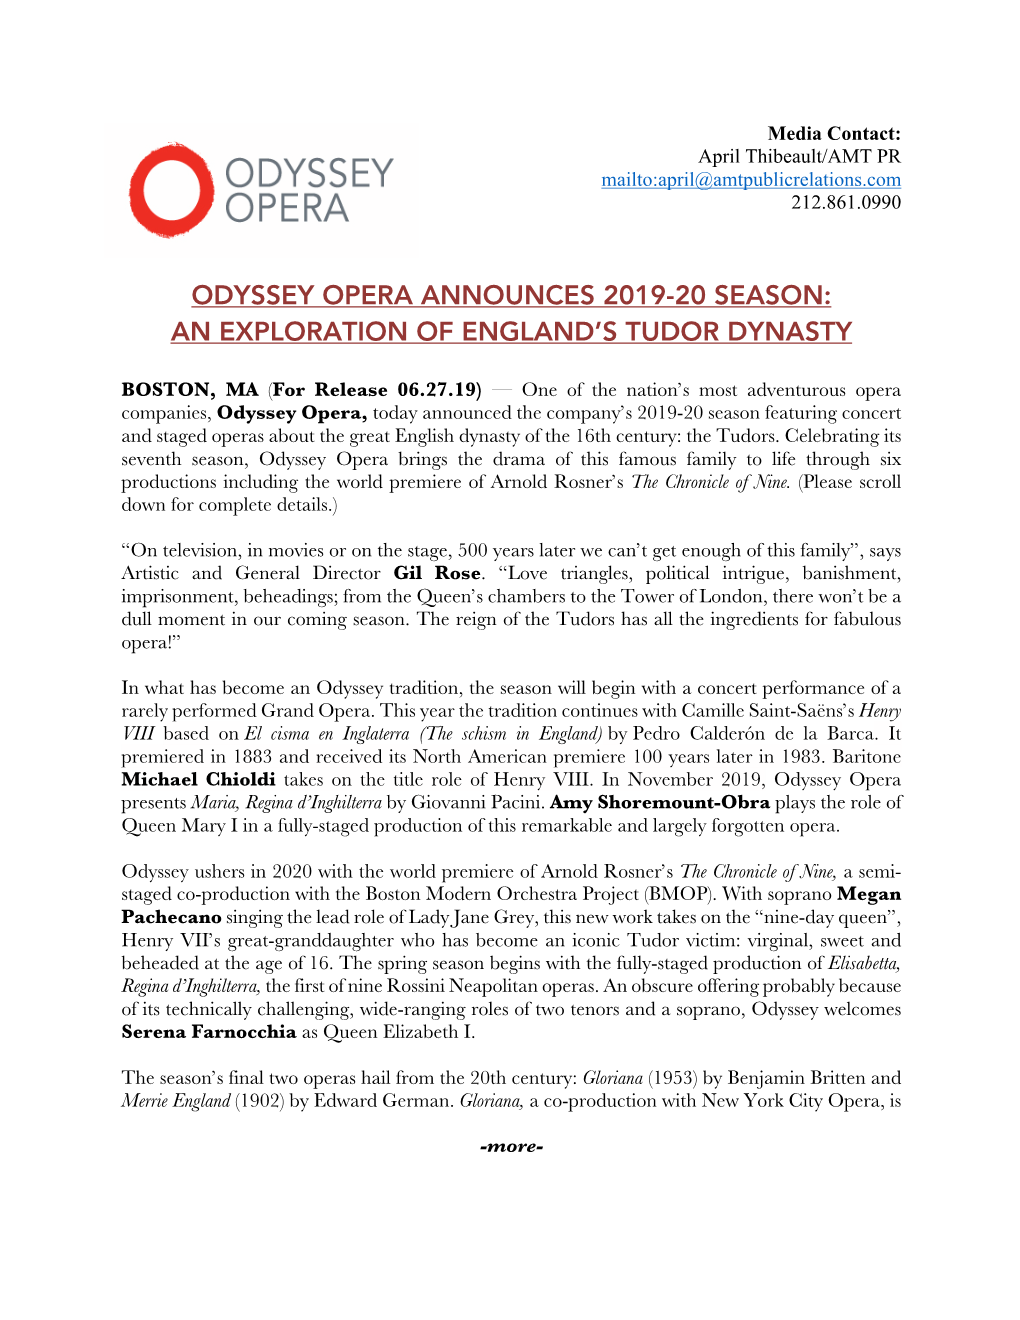 Odyssey Opera Announces 2019-20 Season: an Exploration of England’S Tudor Dynasty